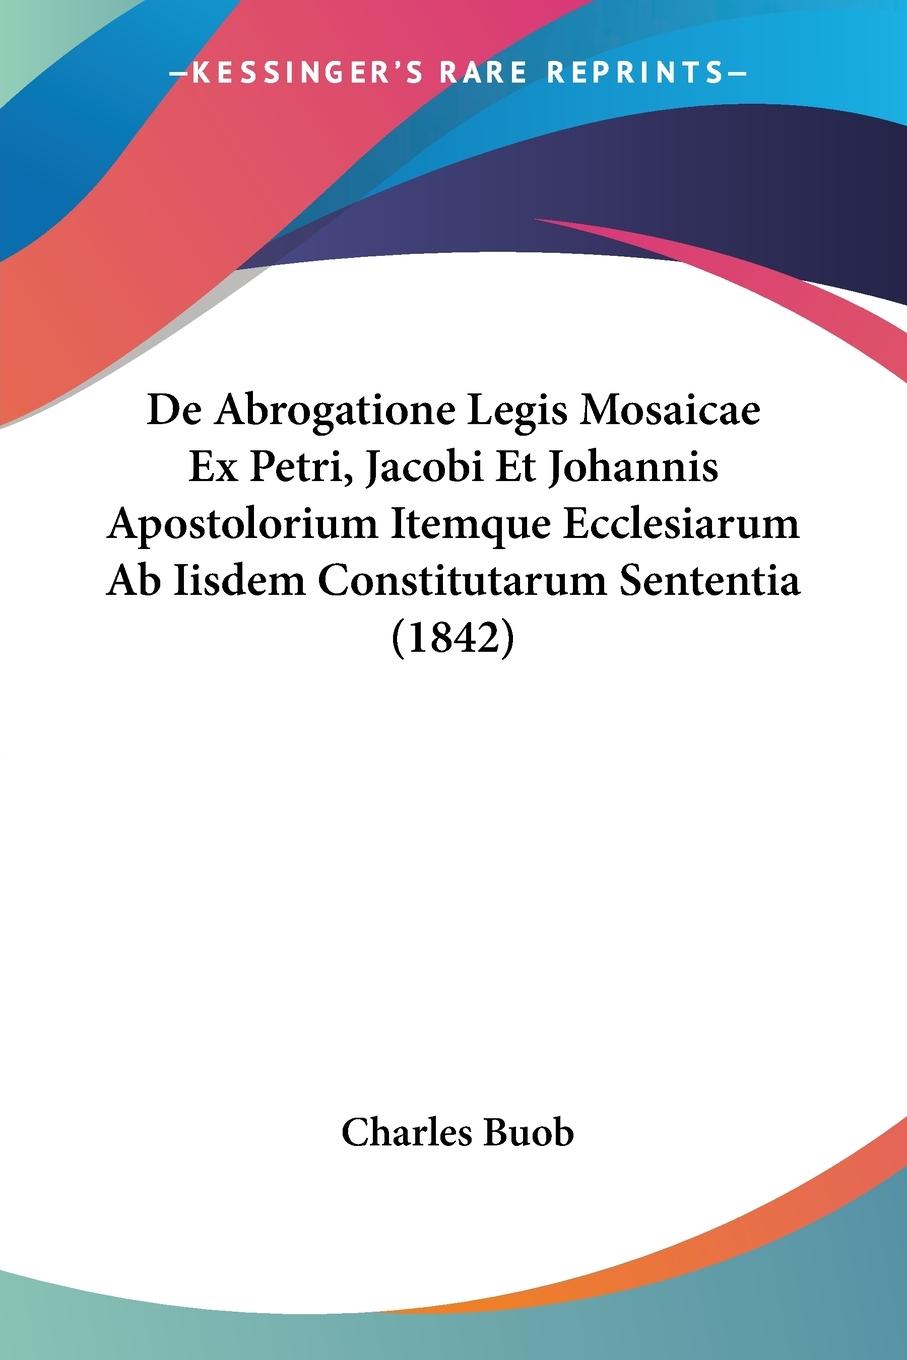 De Abrogatione Legis Mosaicae Ex Petri, Jacobi Et Johannis Apostolorium Itemque Ecclesiarum Ab Iisdem Constitutarum Sententia (1842) - Buob, Charles